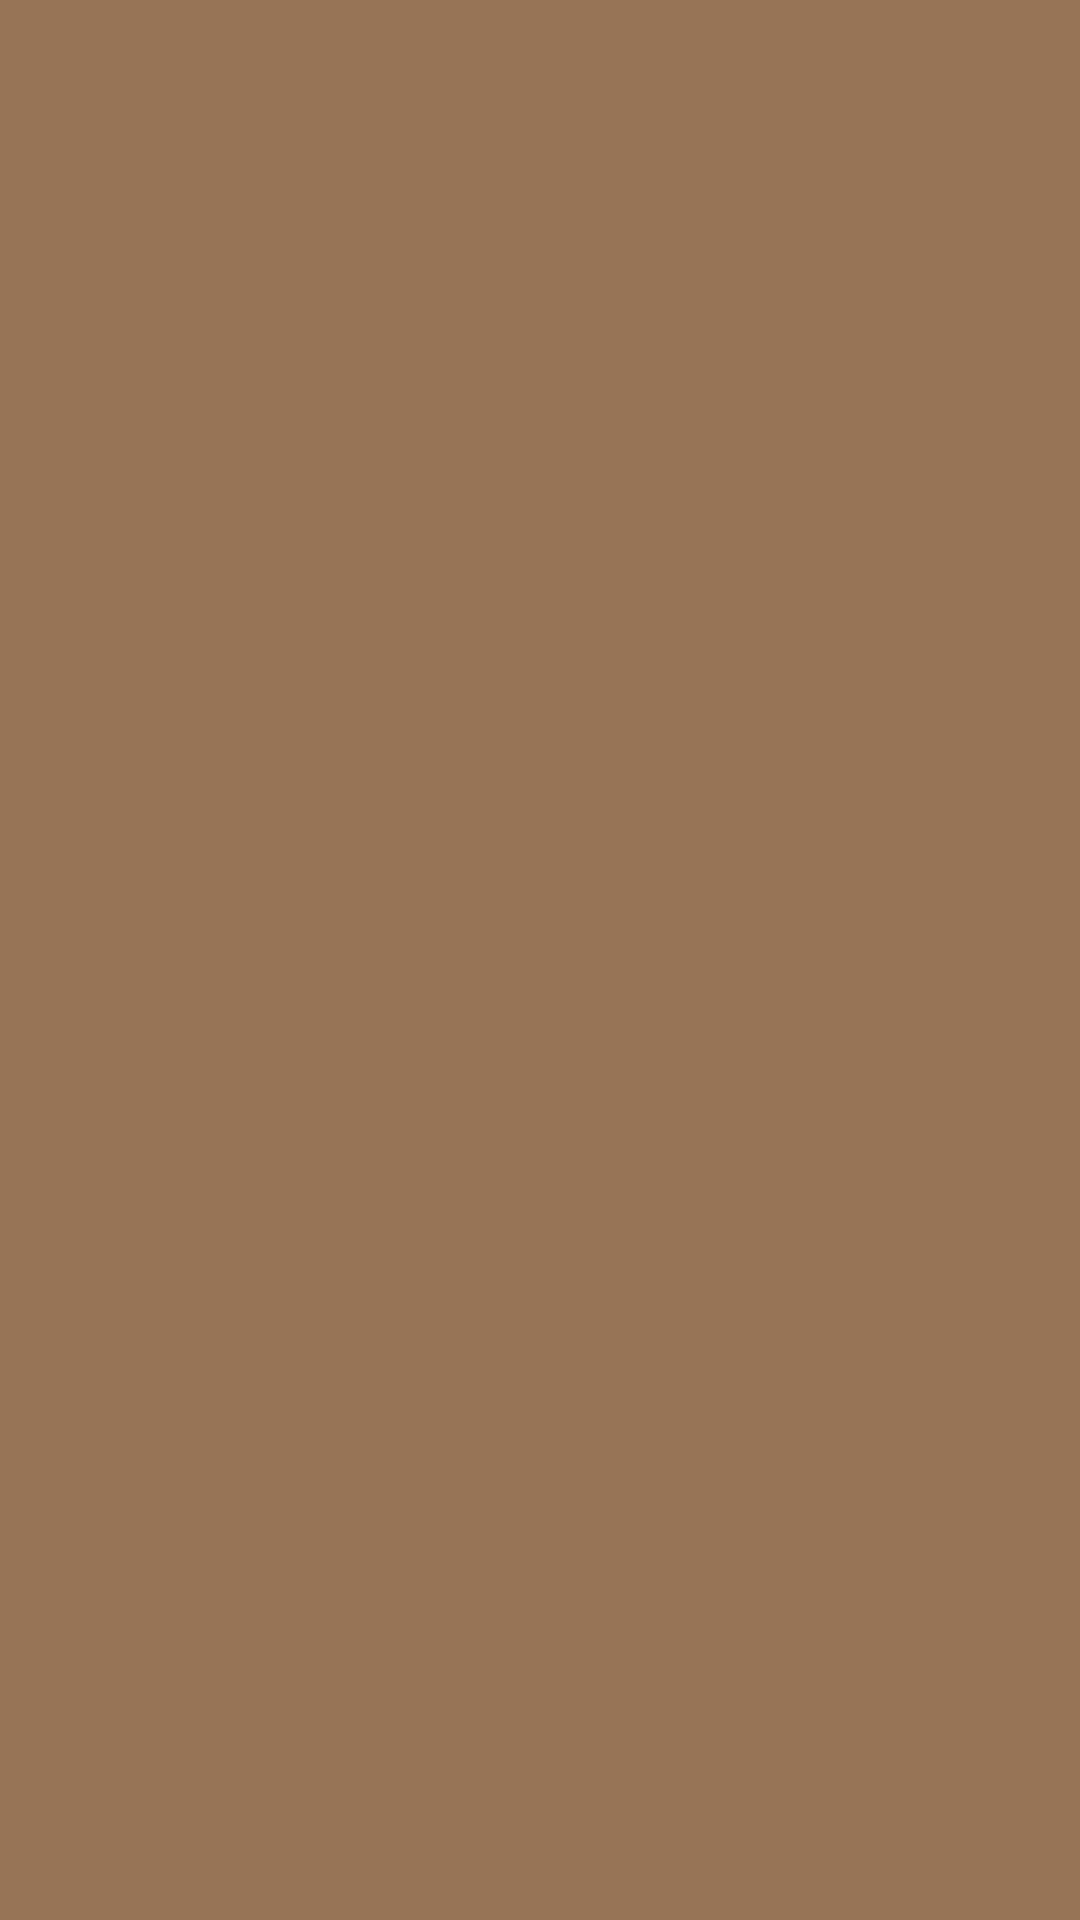 1080x1920 Liver Chestnut Solid Color Background